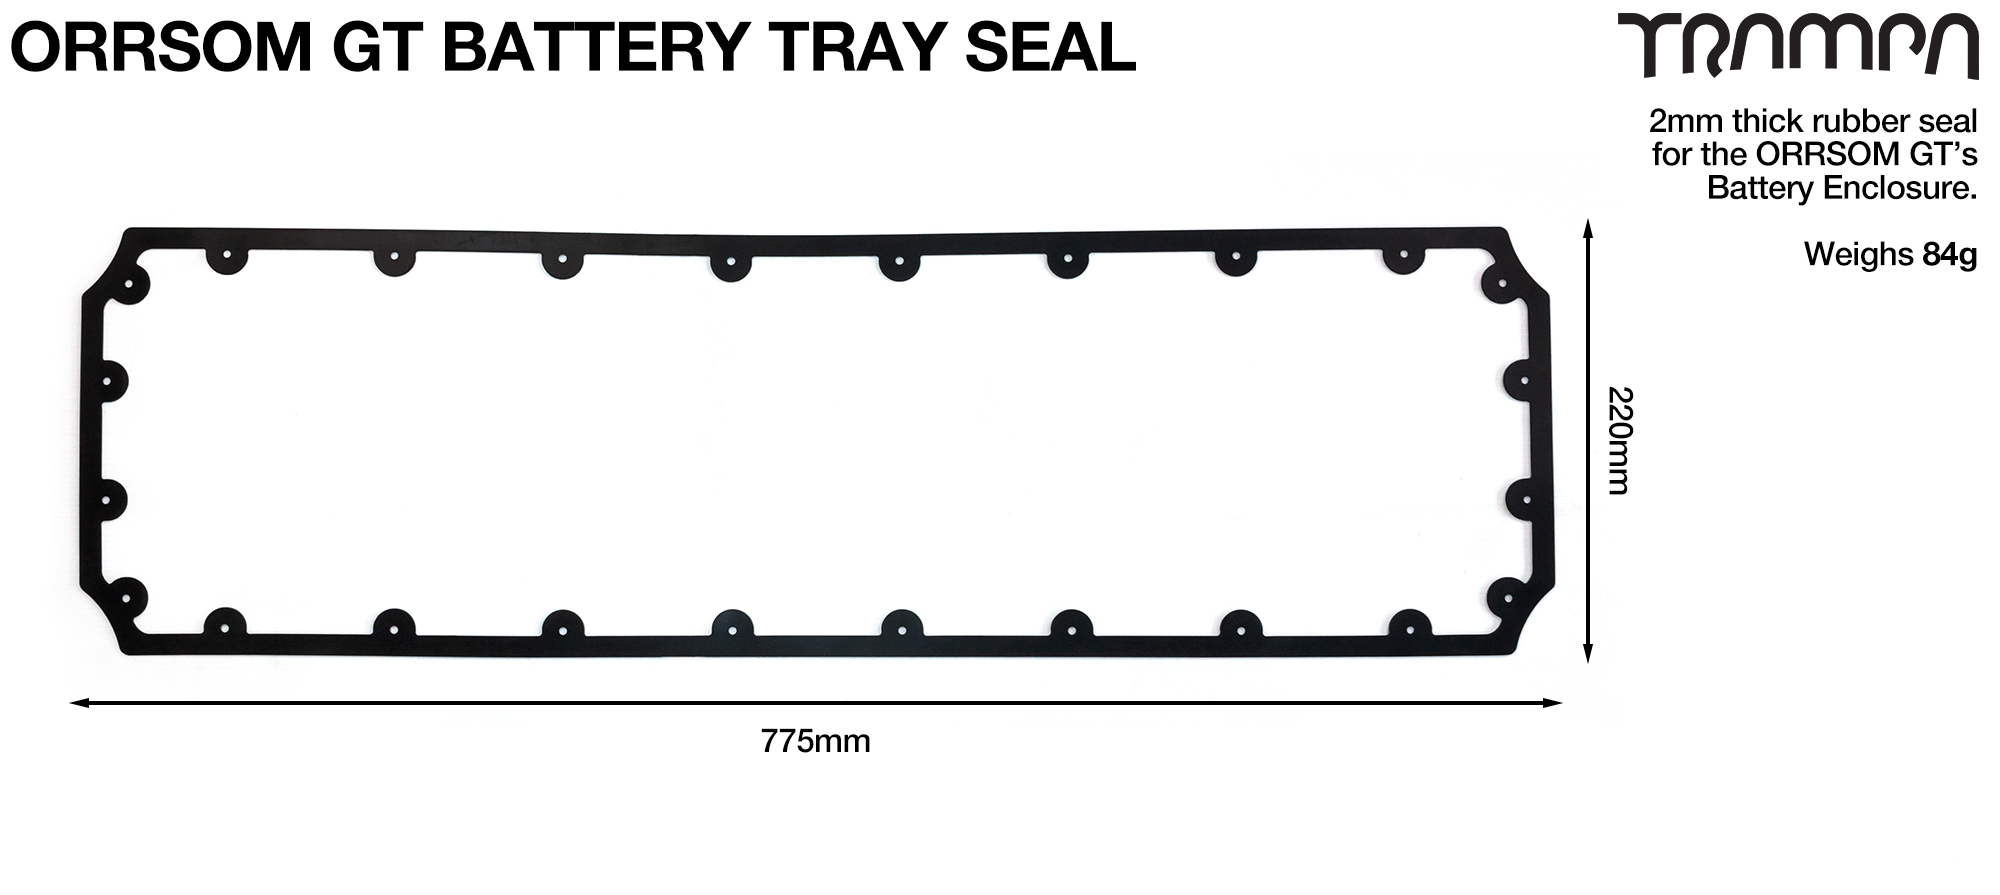 ORRSOM GT Longboard Underboard Battery Tray NBR SEAL 776.82 x 227 x 2mm